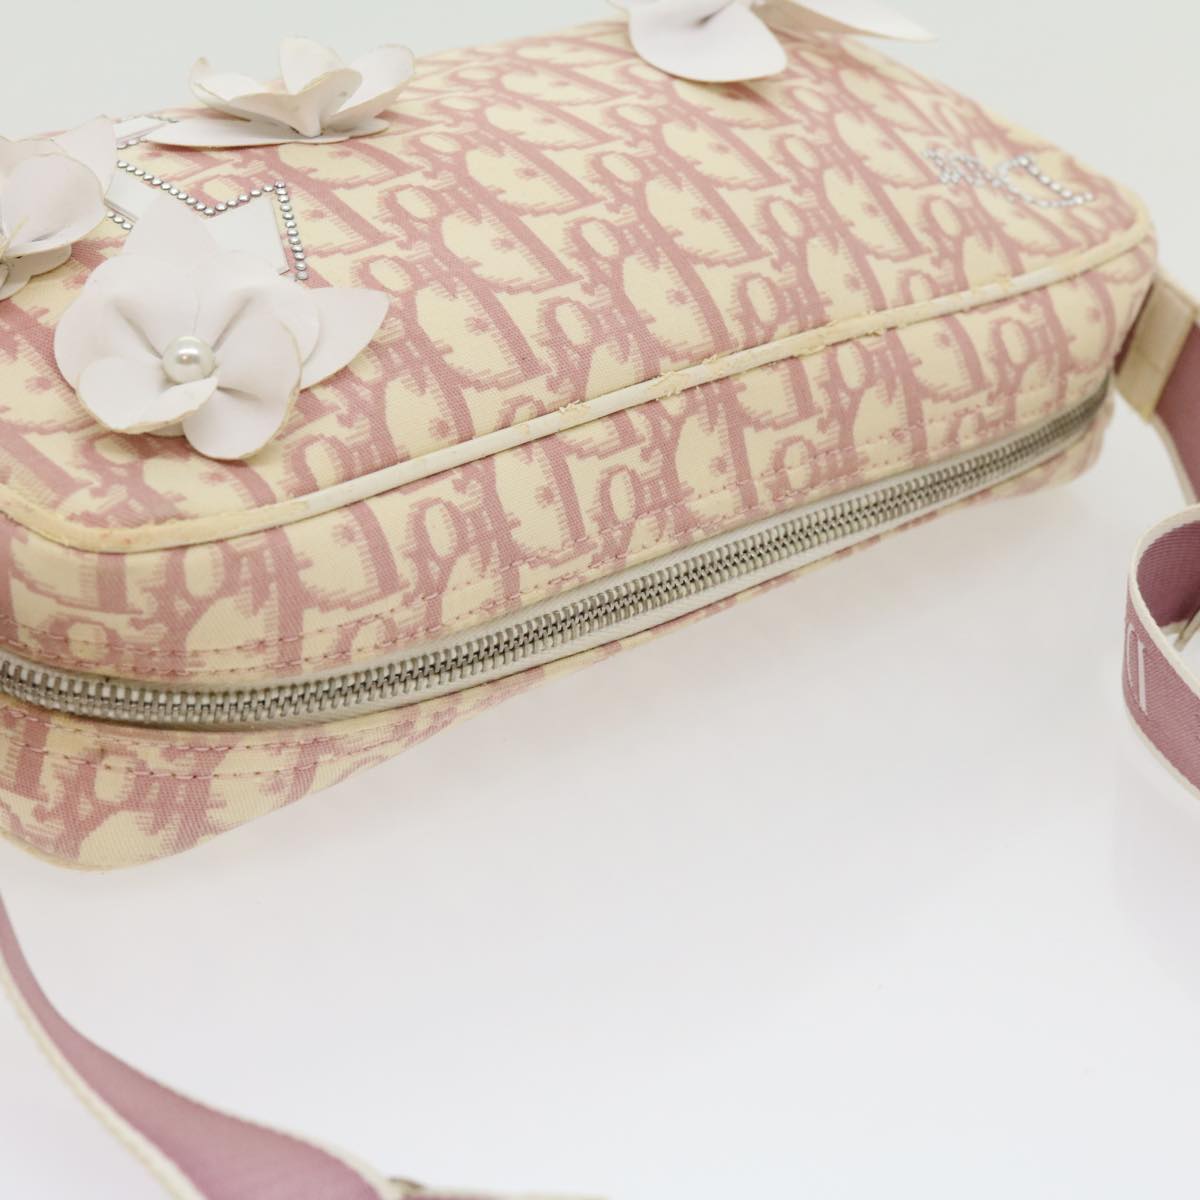 Christian Dior Trotter Canvas Flower Shoulder Bag Pink Auth rd2246